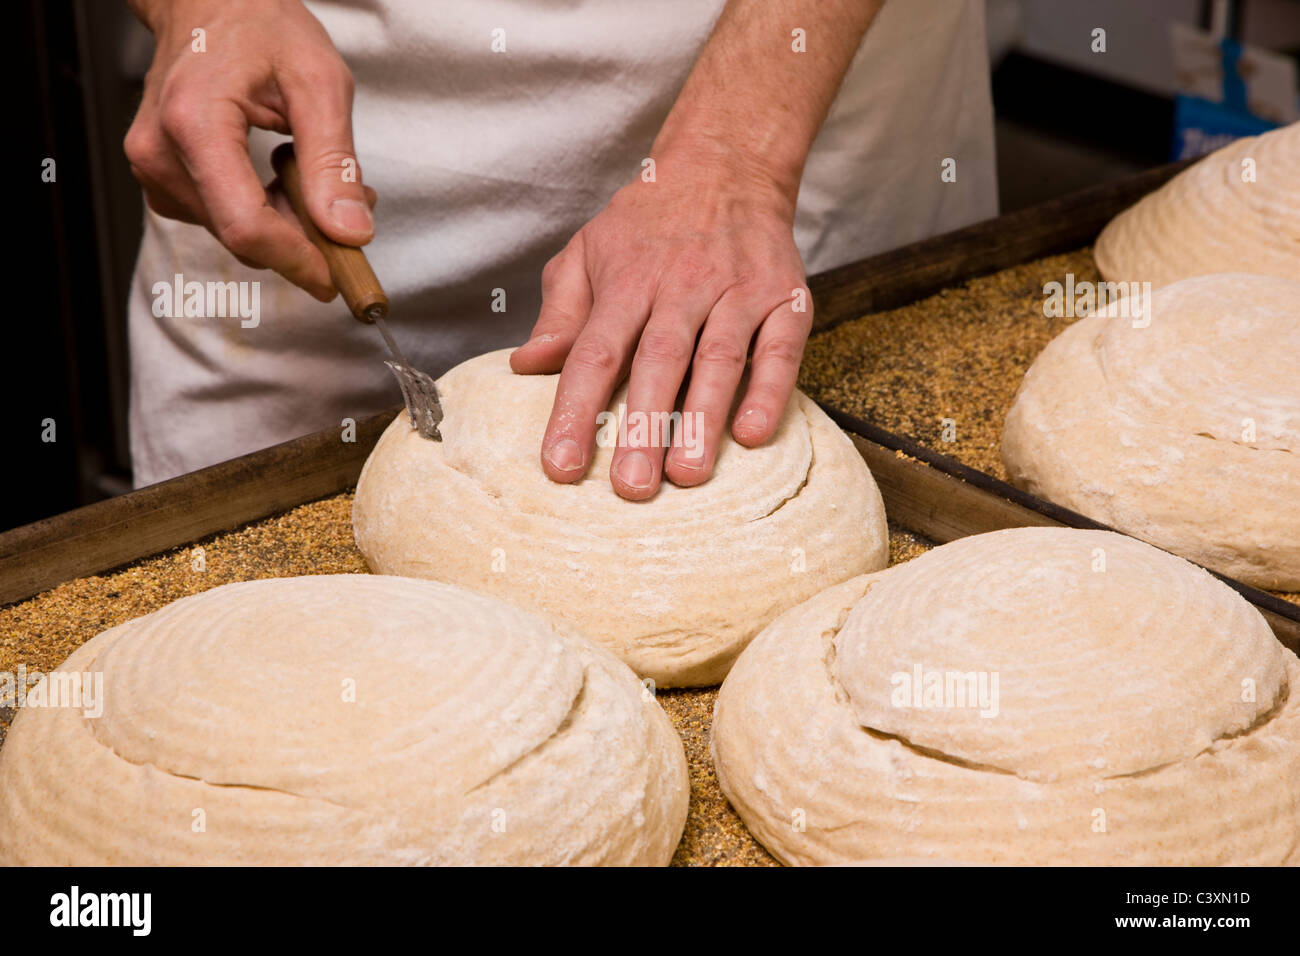 Professionelles Kochen Zubereitung frisches Brot in einer kommerziellen Bäckerei Stockfoto